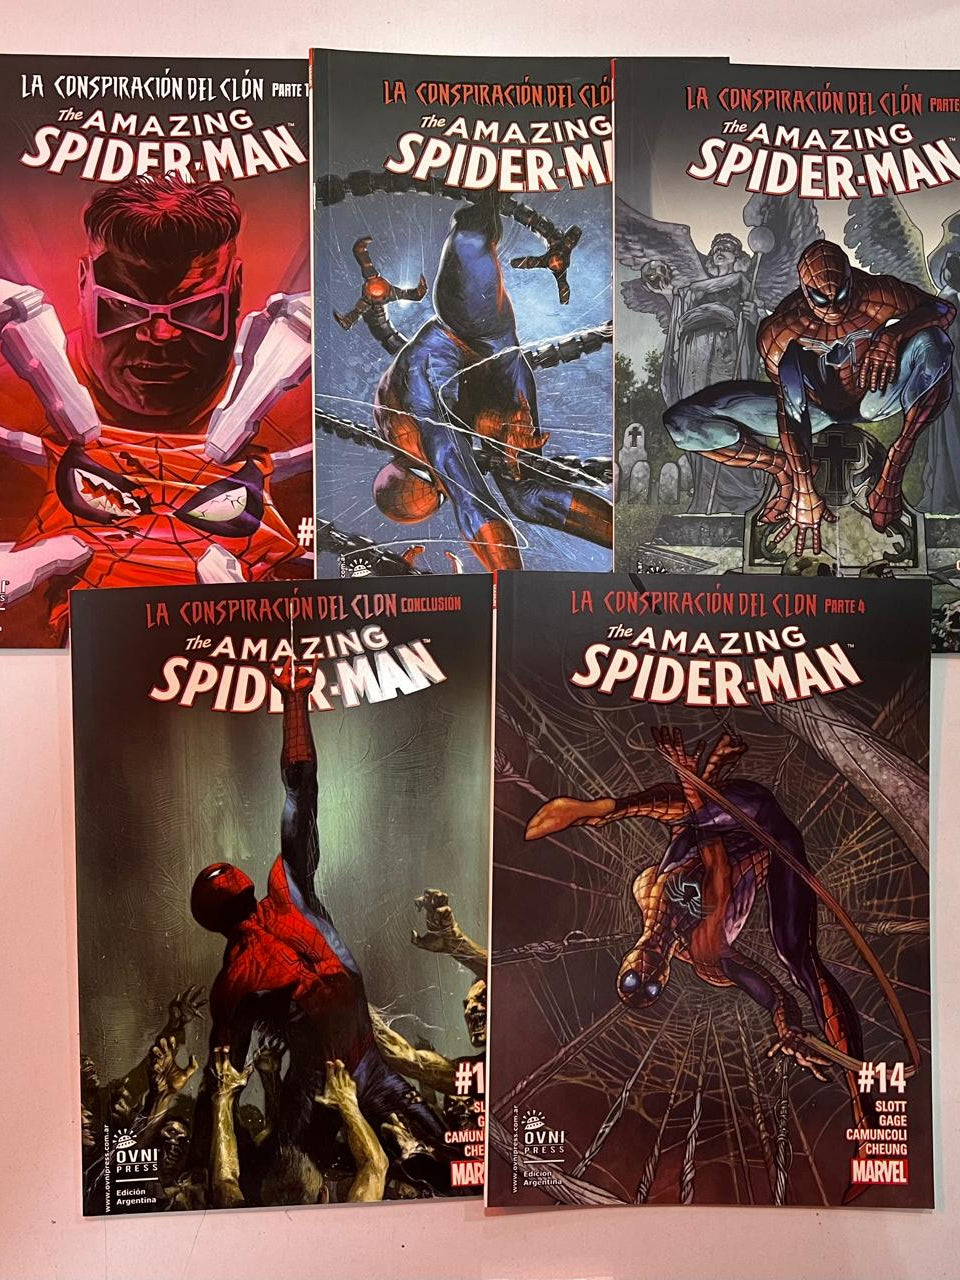 The Amazing Spider-Man: La Conspiración del Clón (Saga Completa tomos 1 al 5) OVNI Press ENcuadrocomics